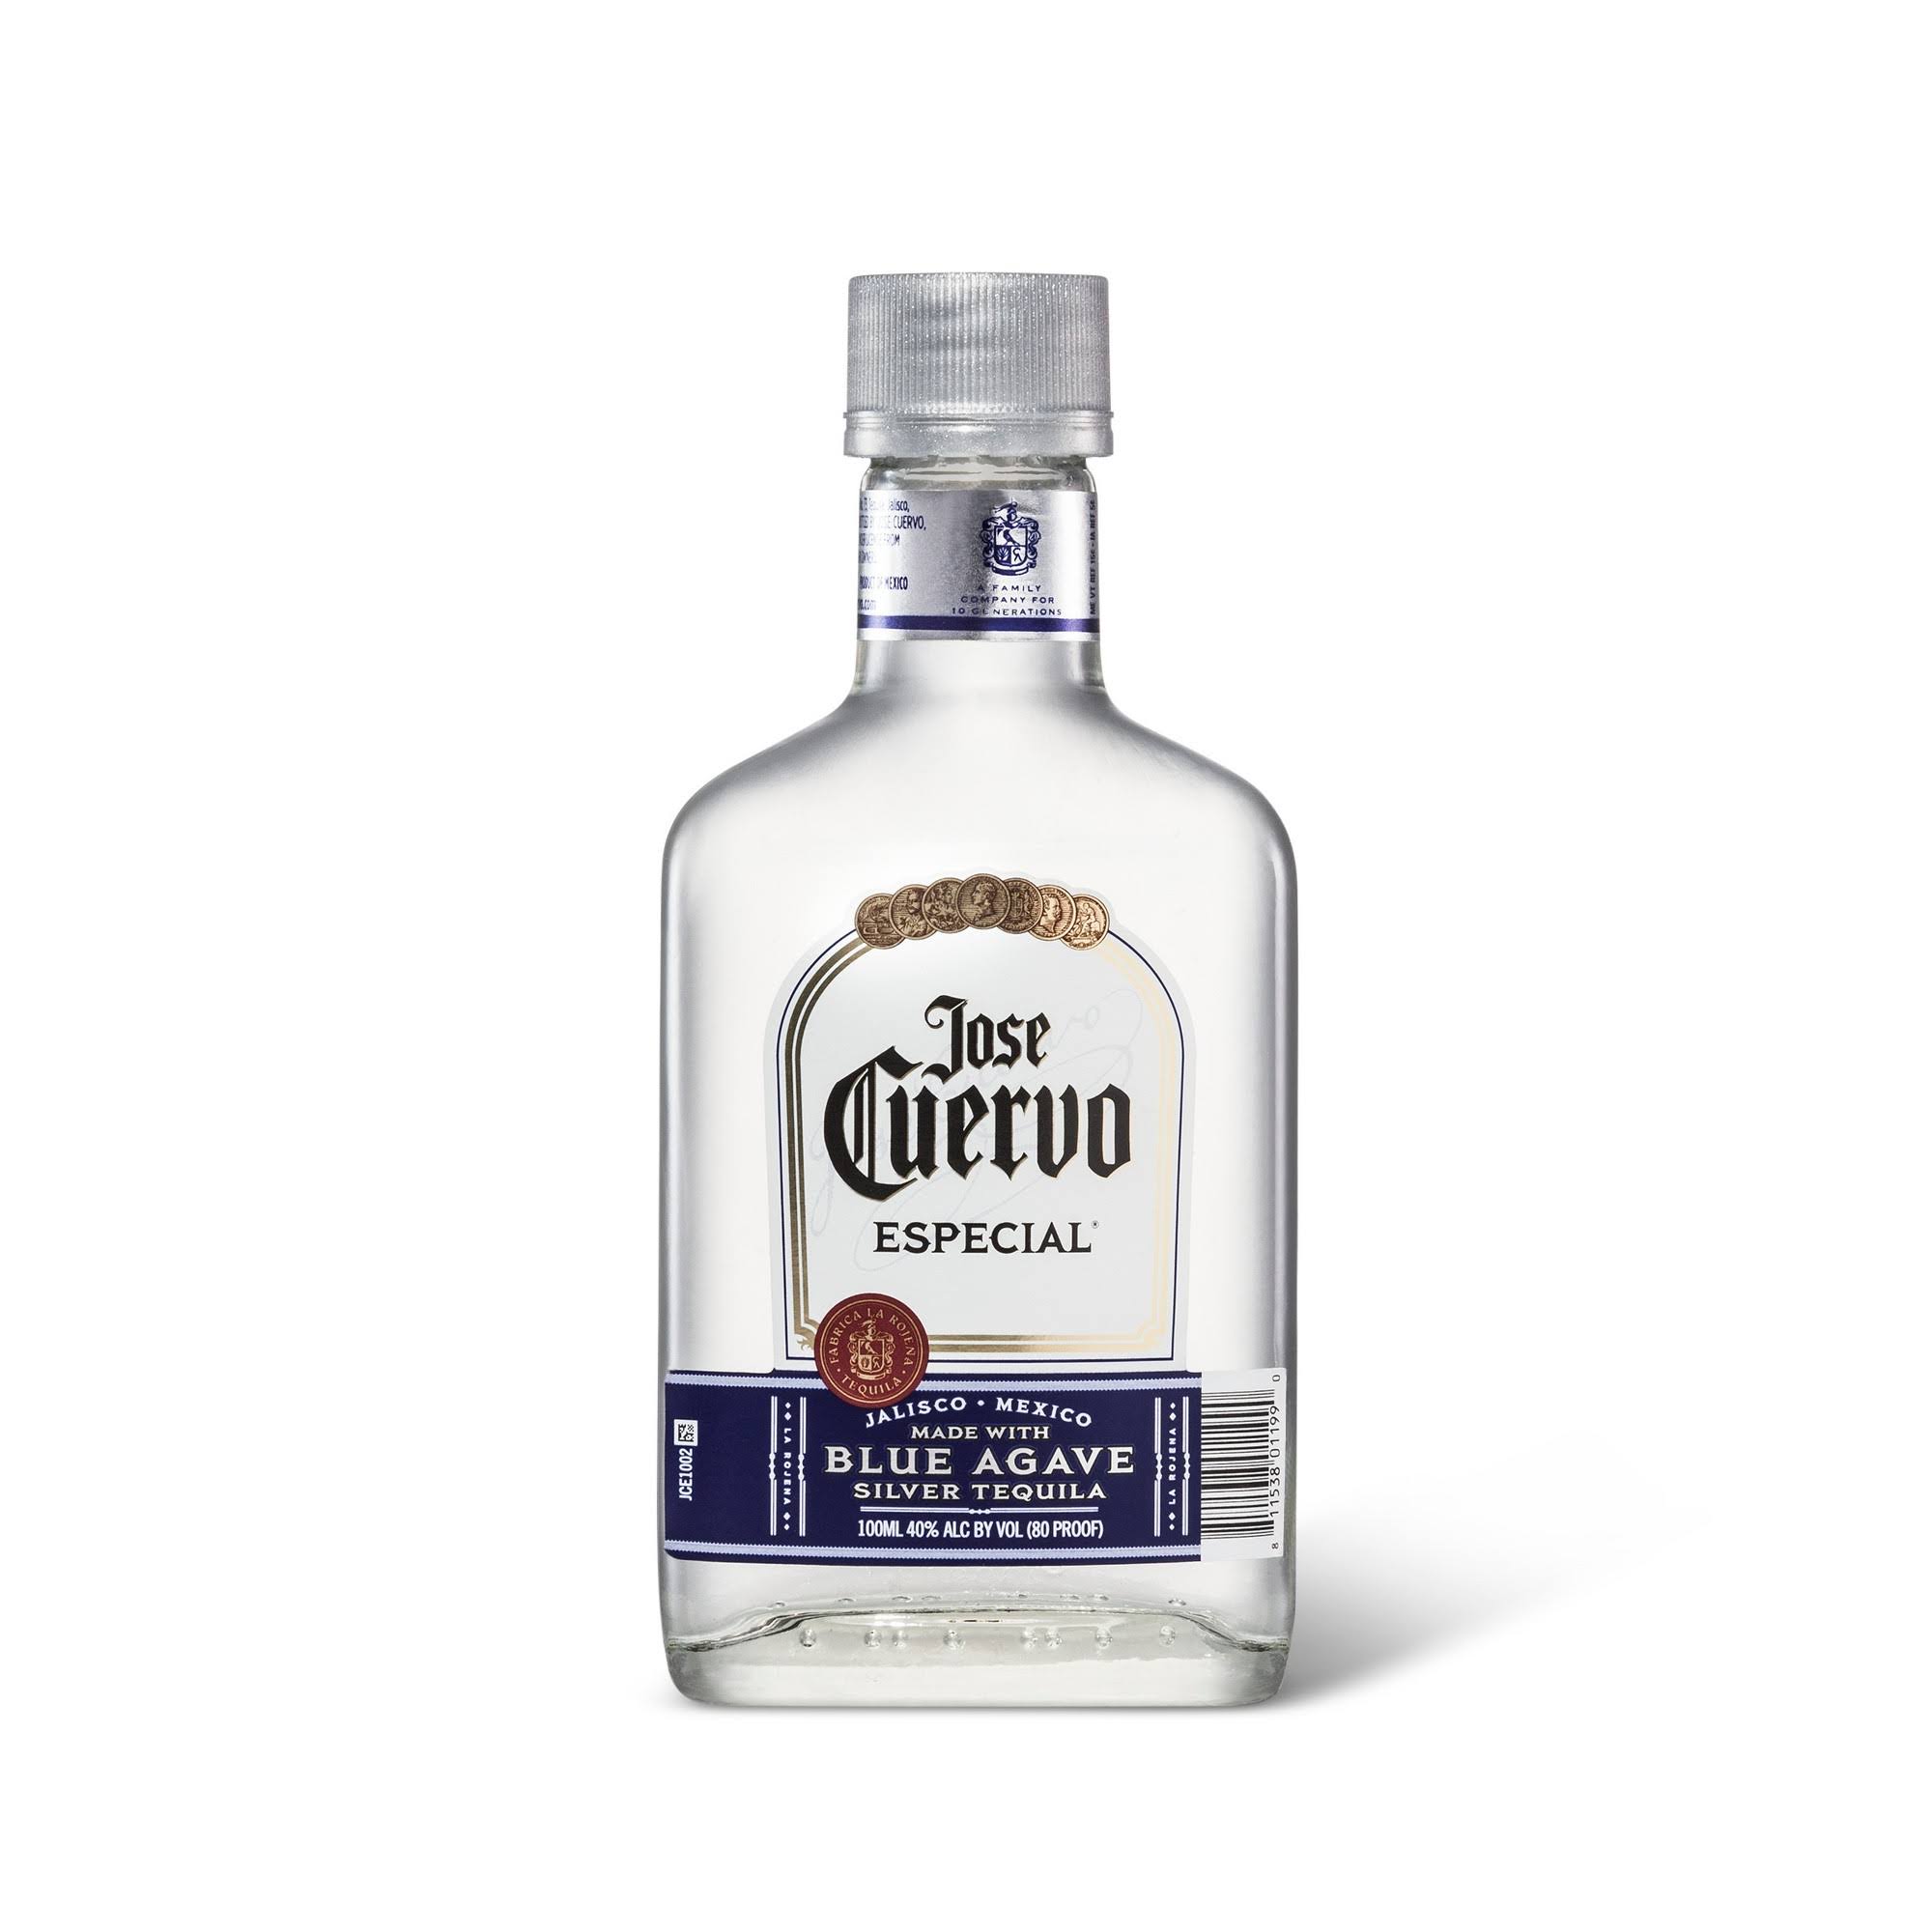 Jose Cuervo Especial Tequila, Silver, Mexico - 100 ml